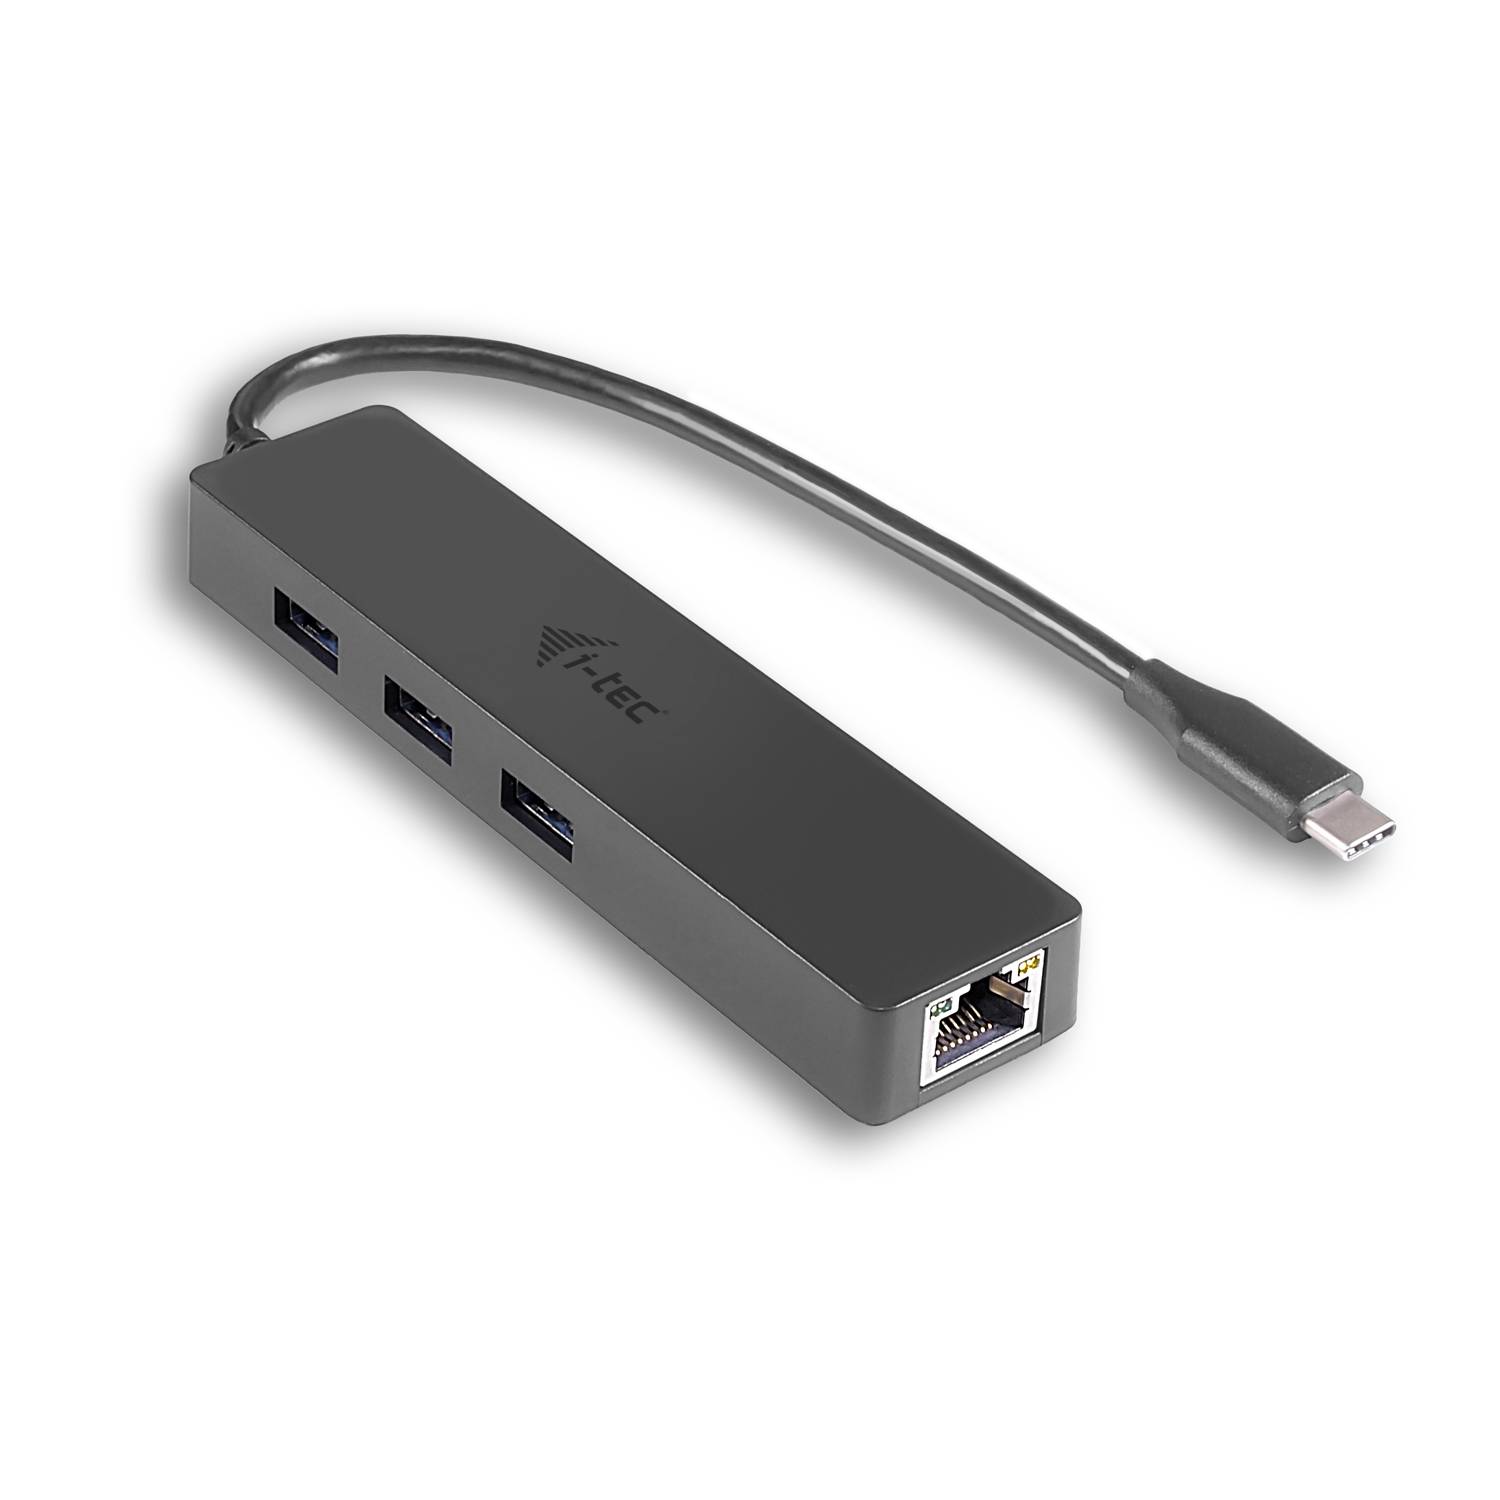 Rca Informatique - Image du produit : I-TEC USB-C SLIM HUB + GLAN USB-C 3 PORT HUB USB 3.0 + GLAN